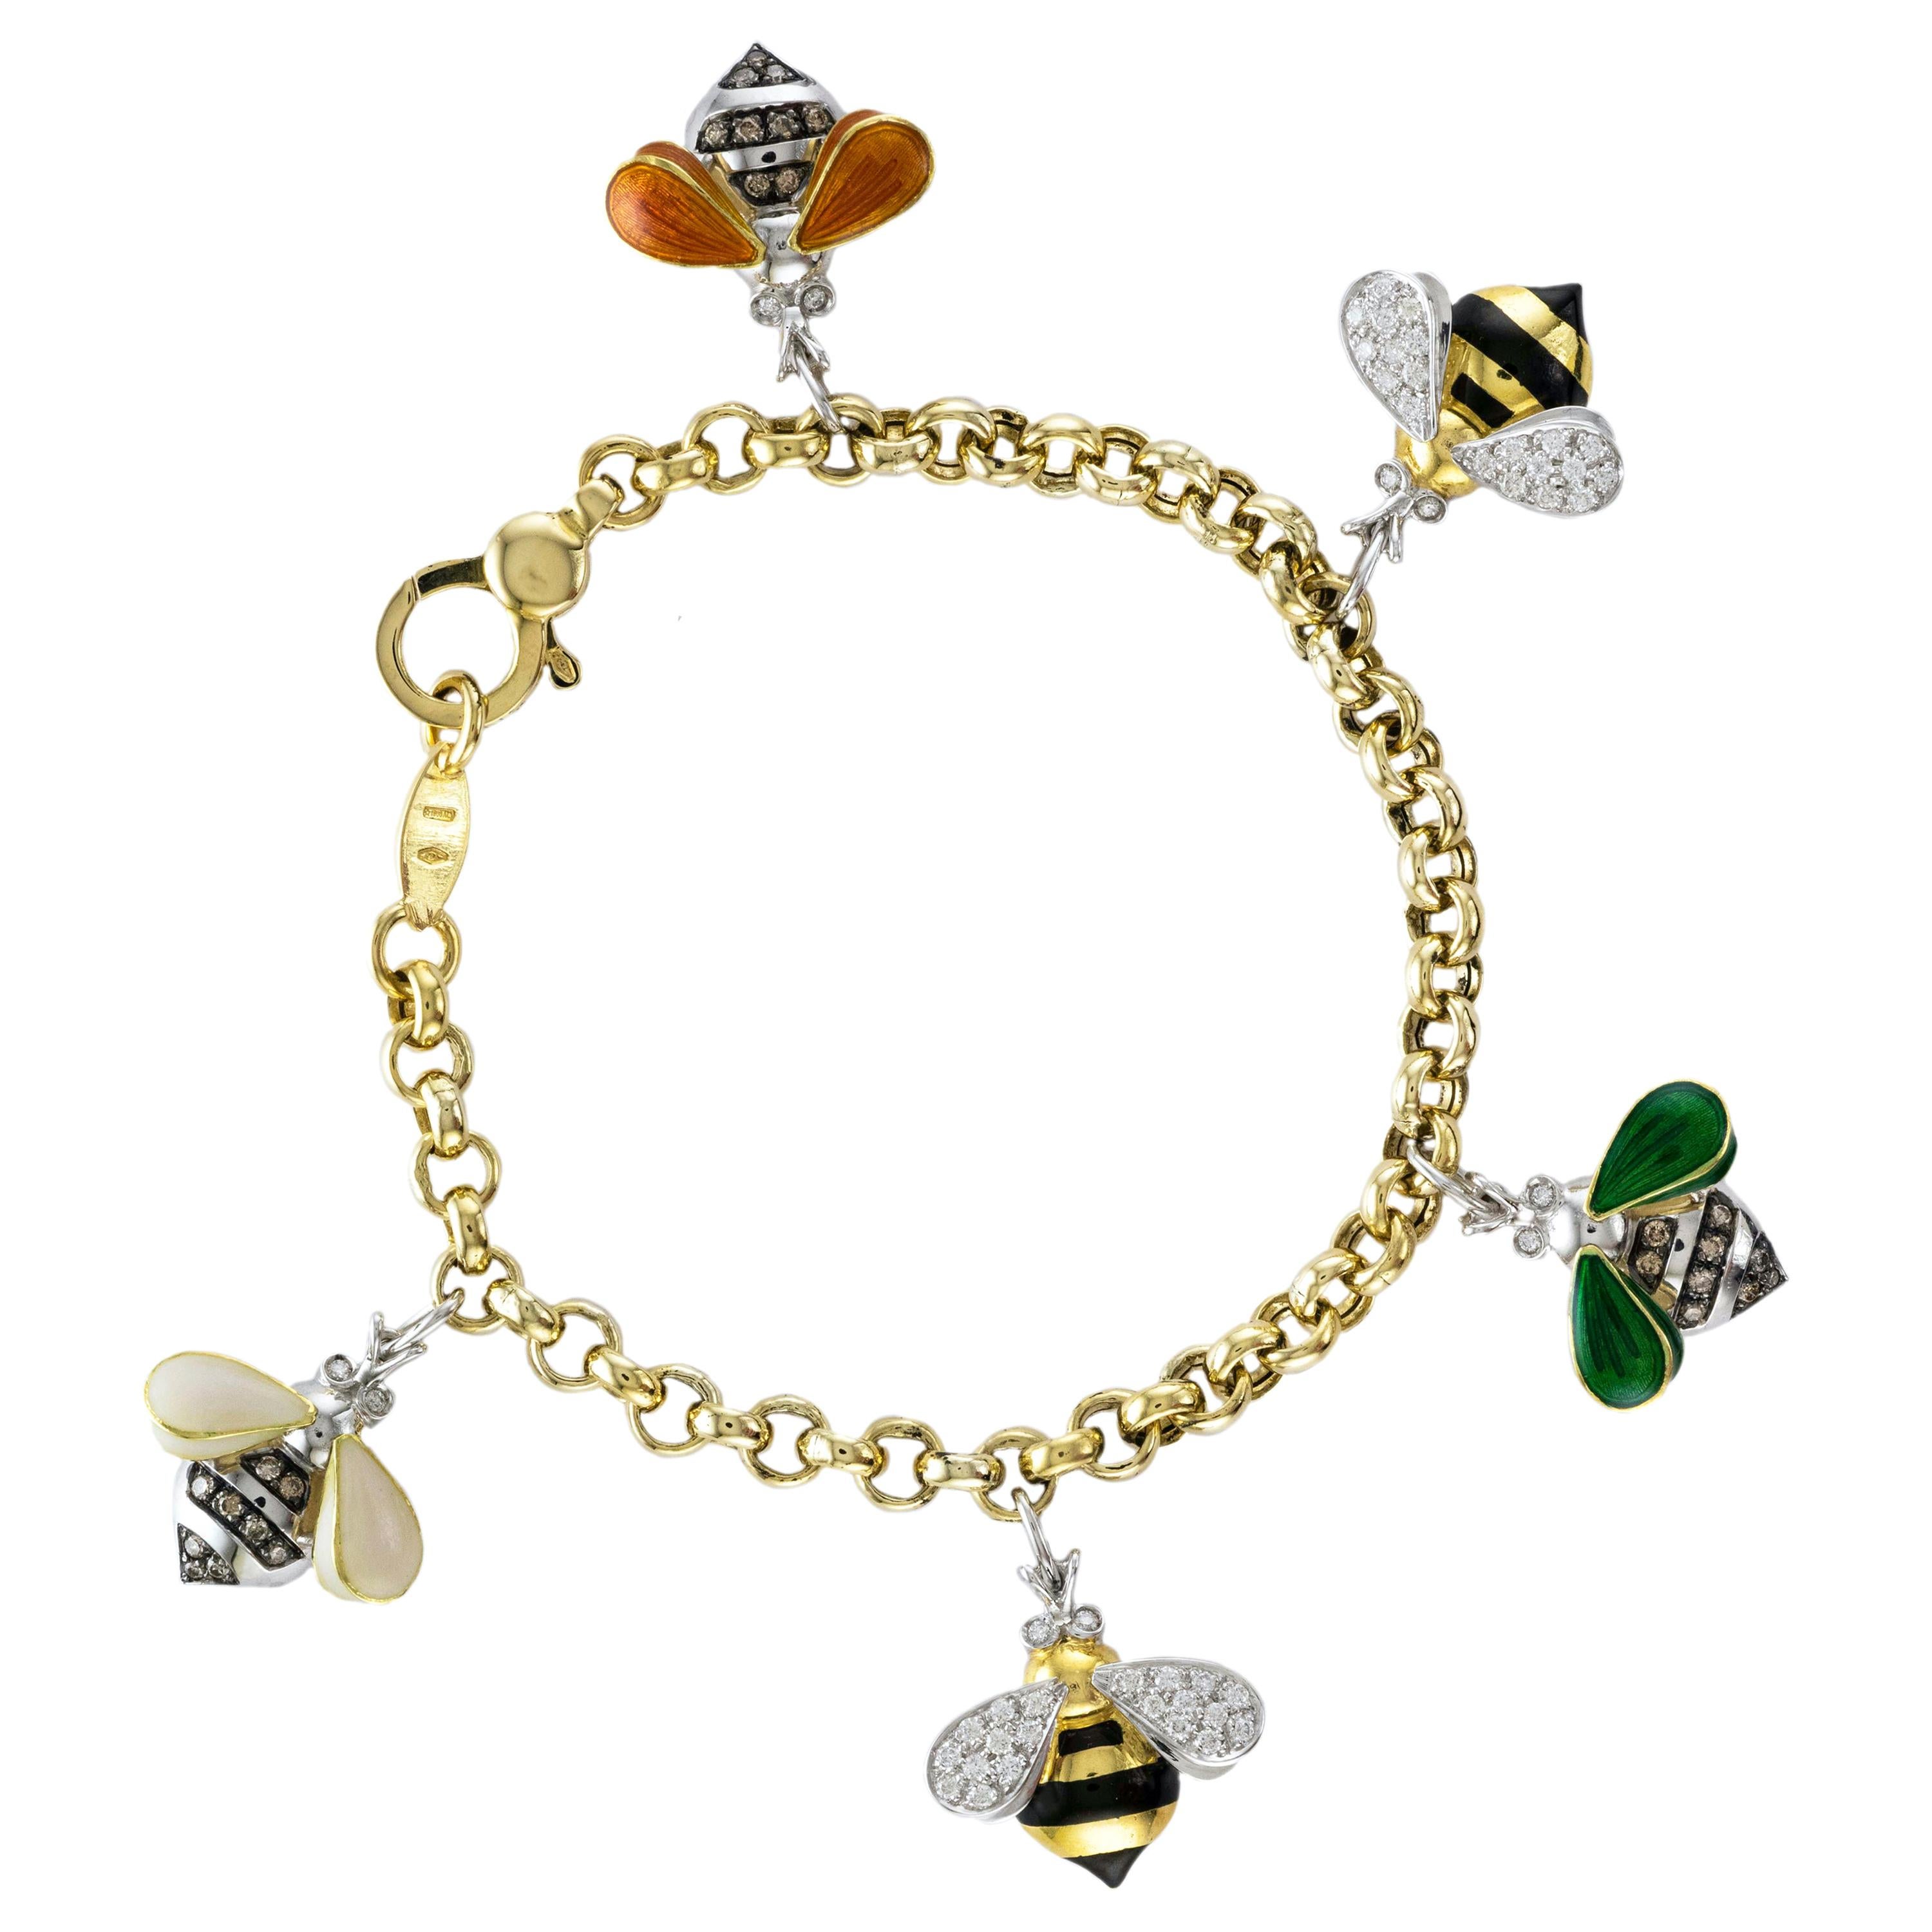 18 Karat Gold und emaillierte Bienen-Charm-Armband